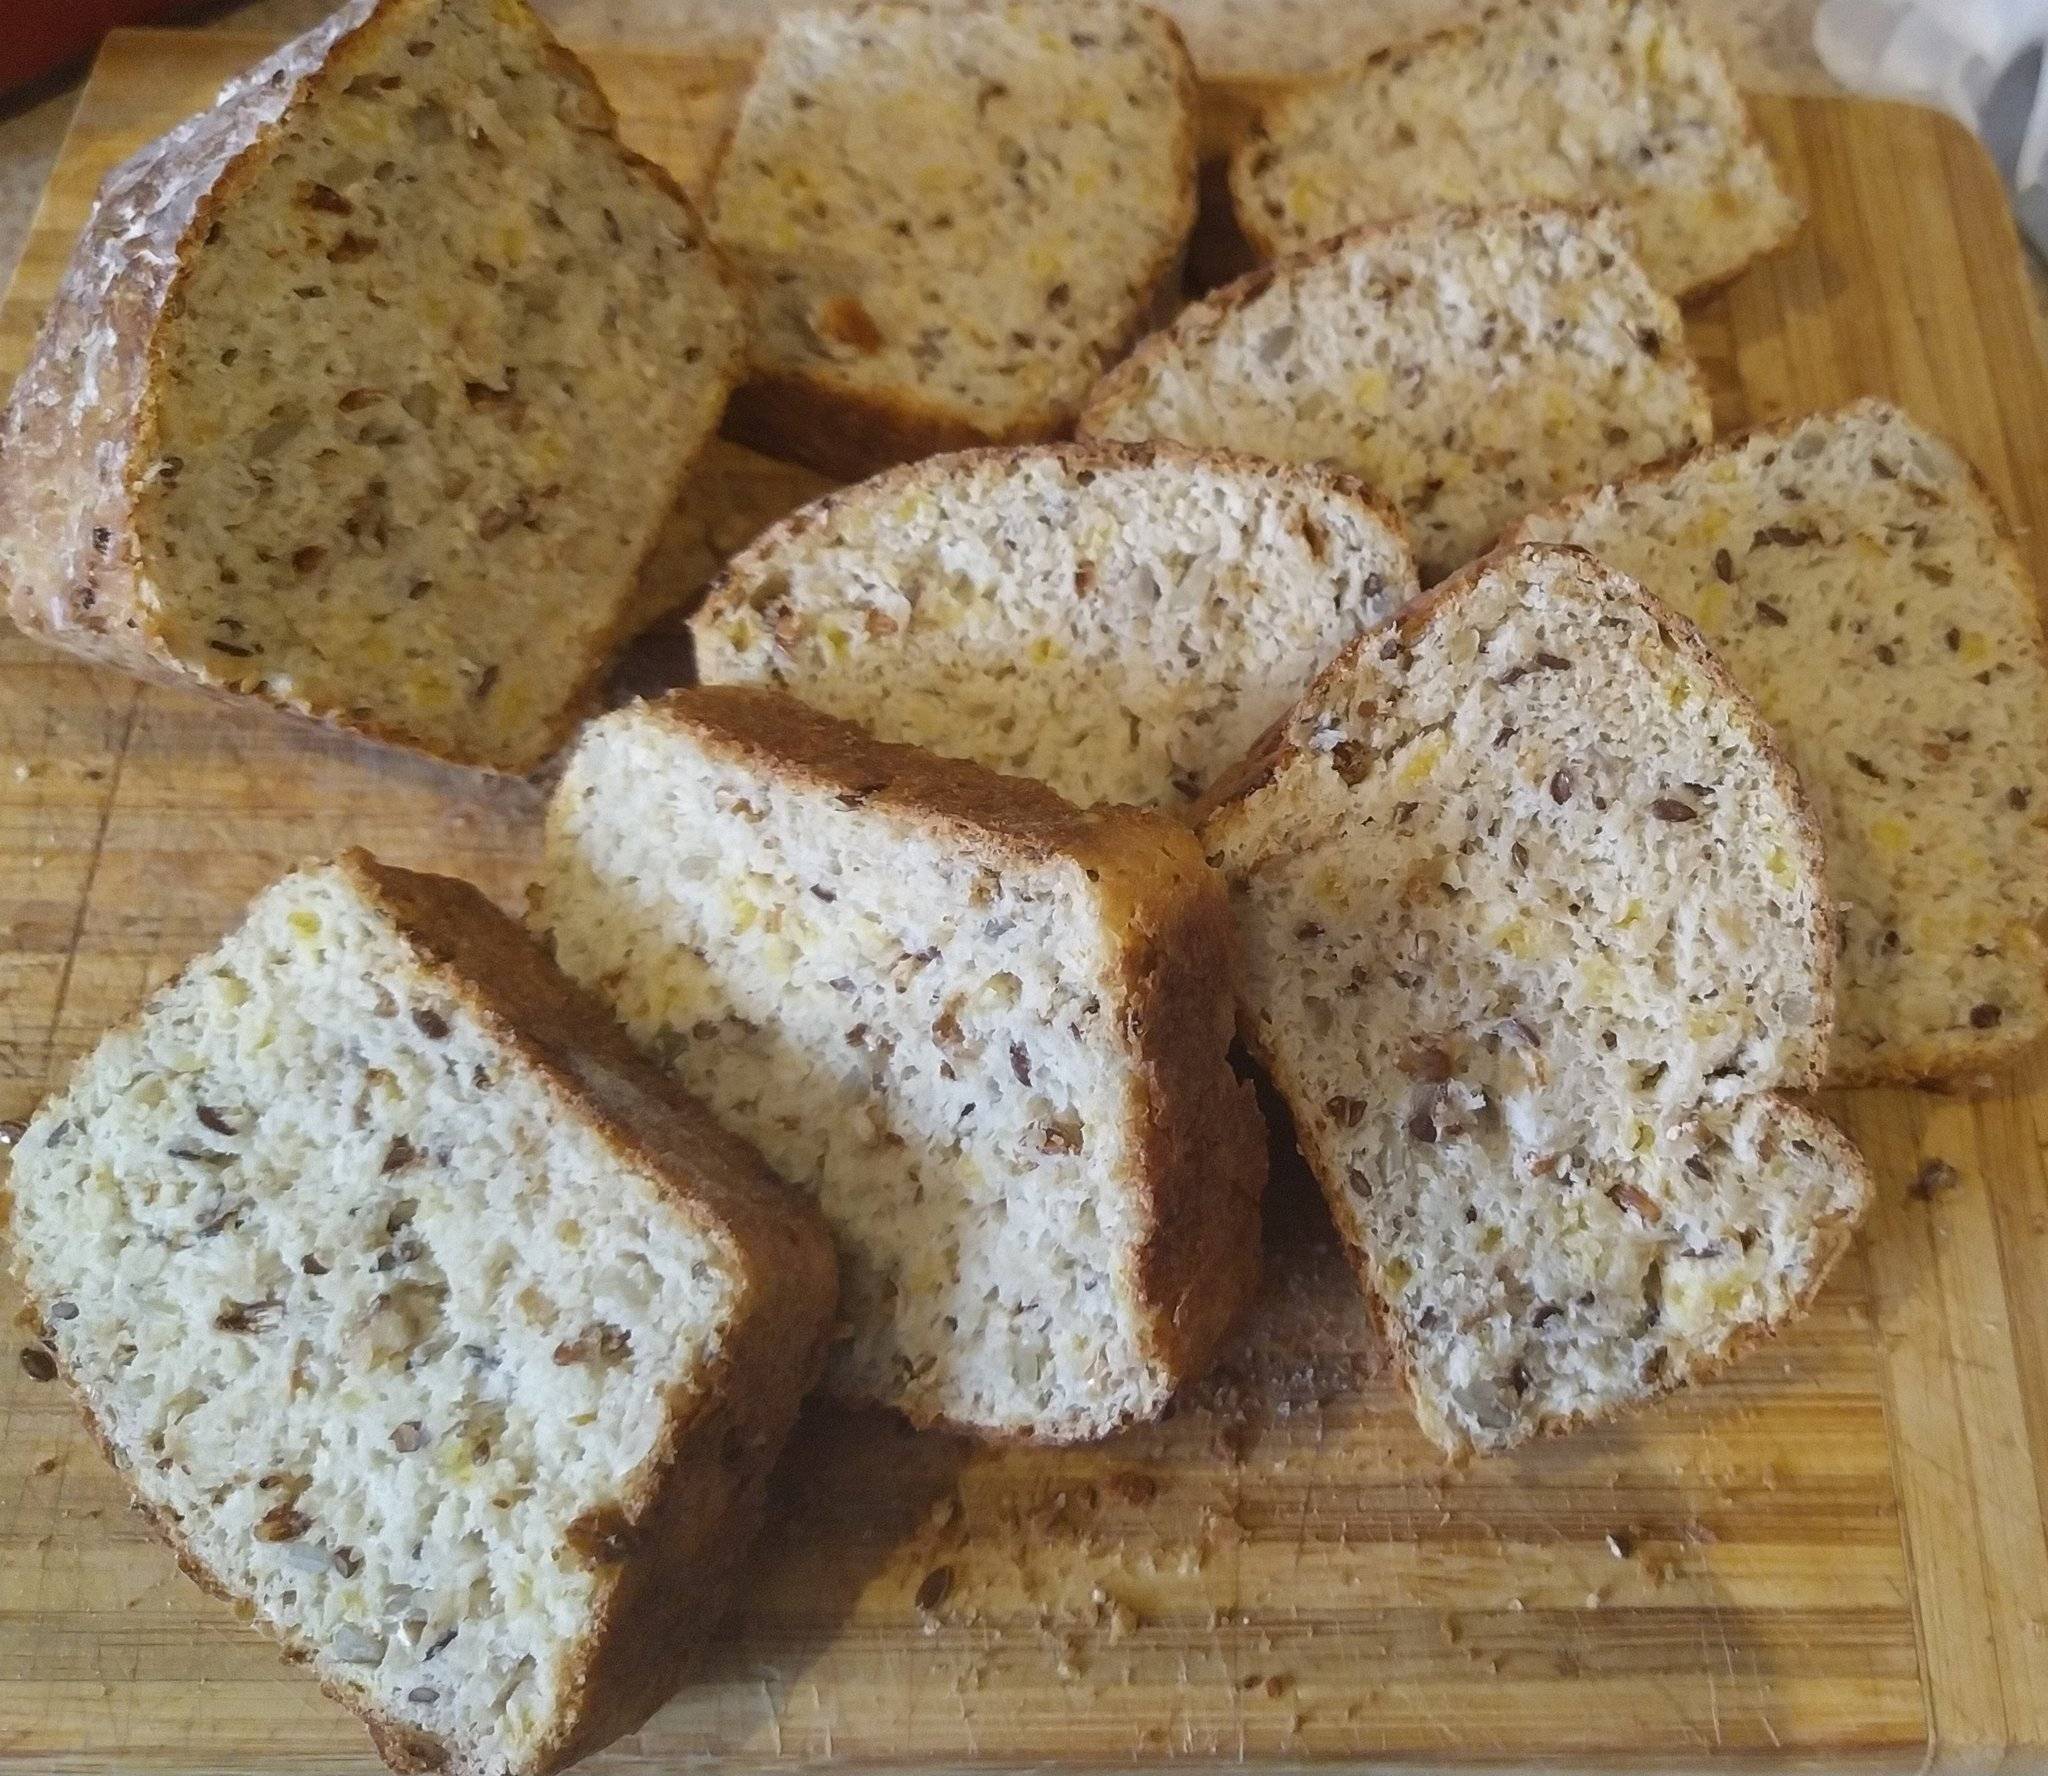 Какой хлеб можно при грудном вскармливании: черный, белый, хлебцы, бородинский, сухари и другой, в том числе в первый месяц